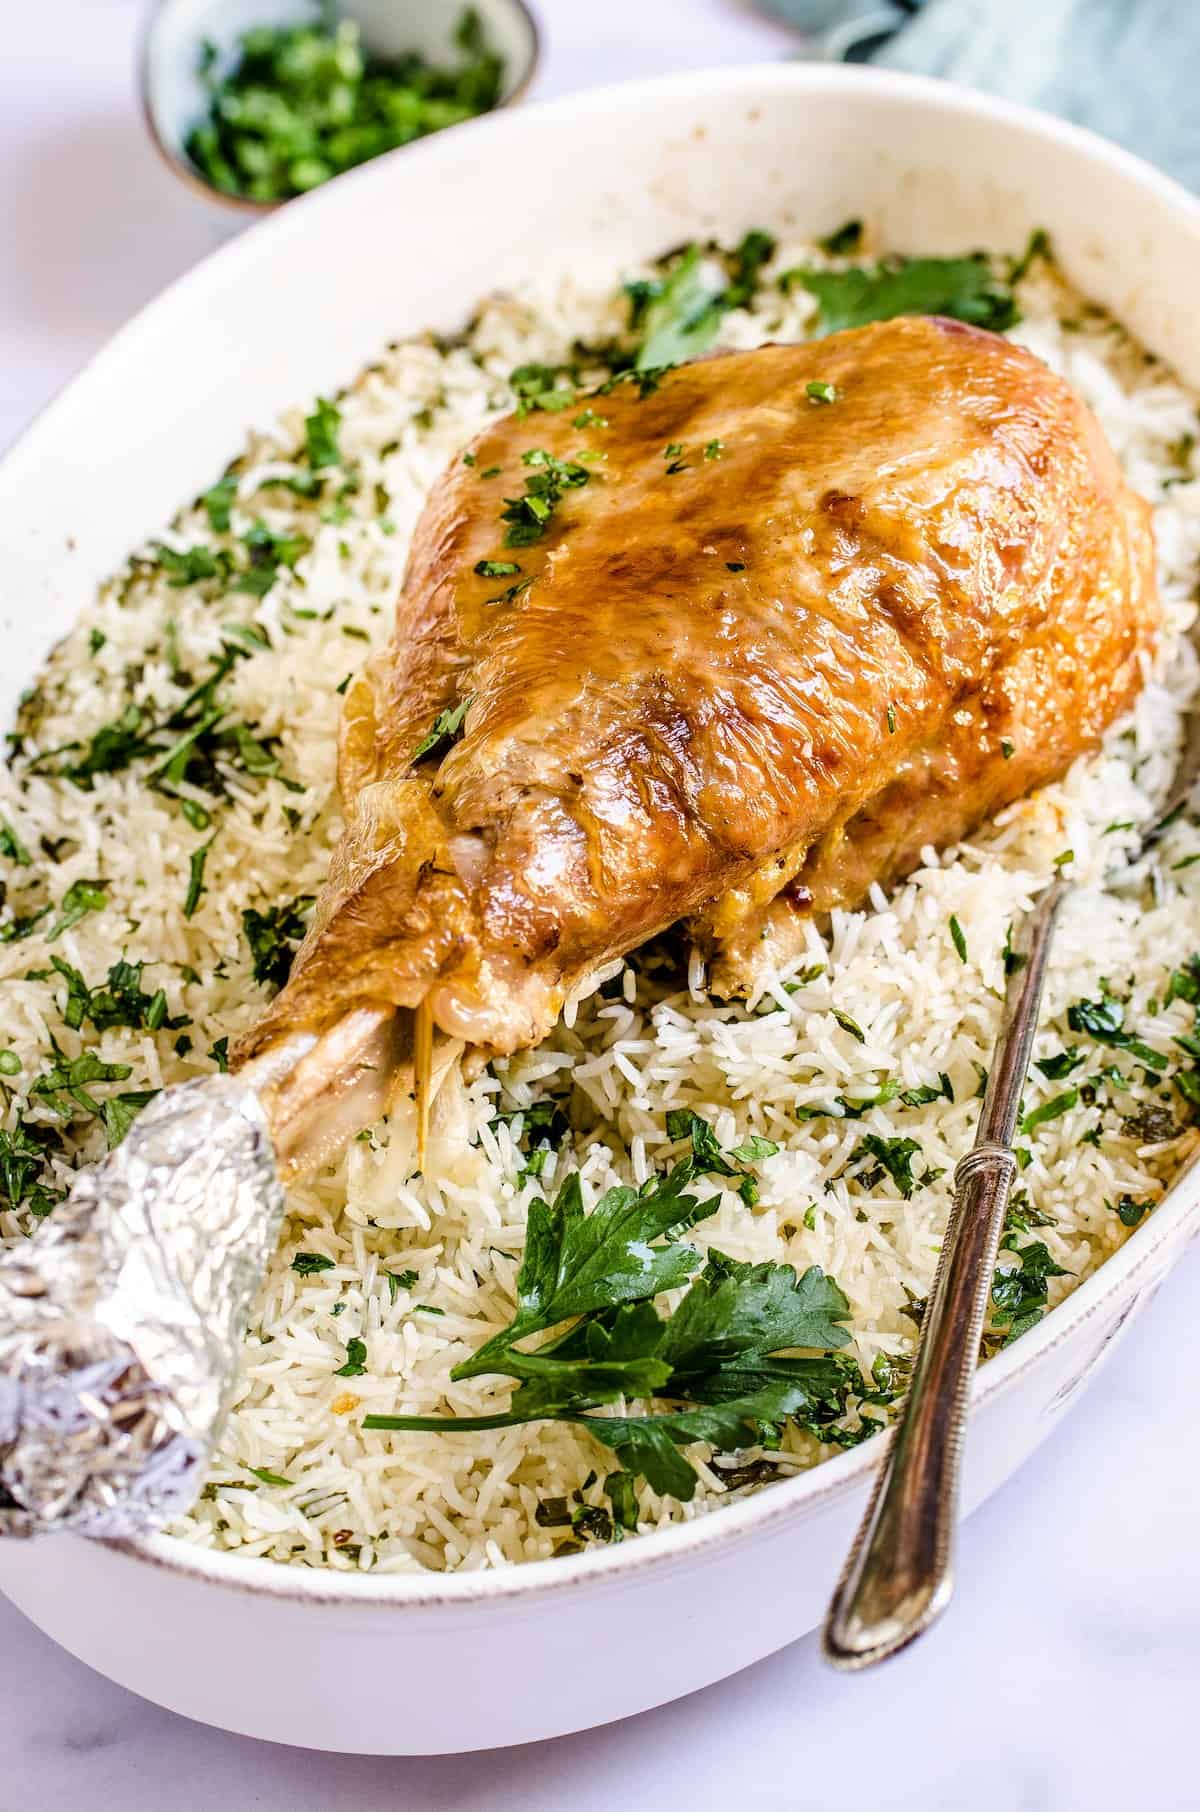 Turkey legs casserole in a baking dish.